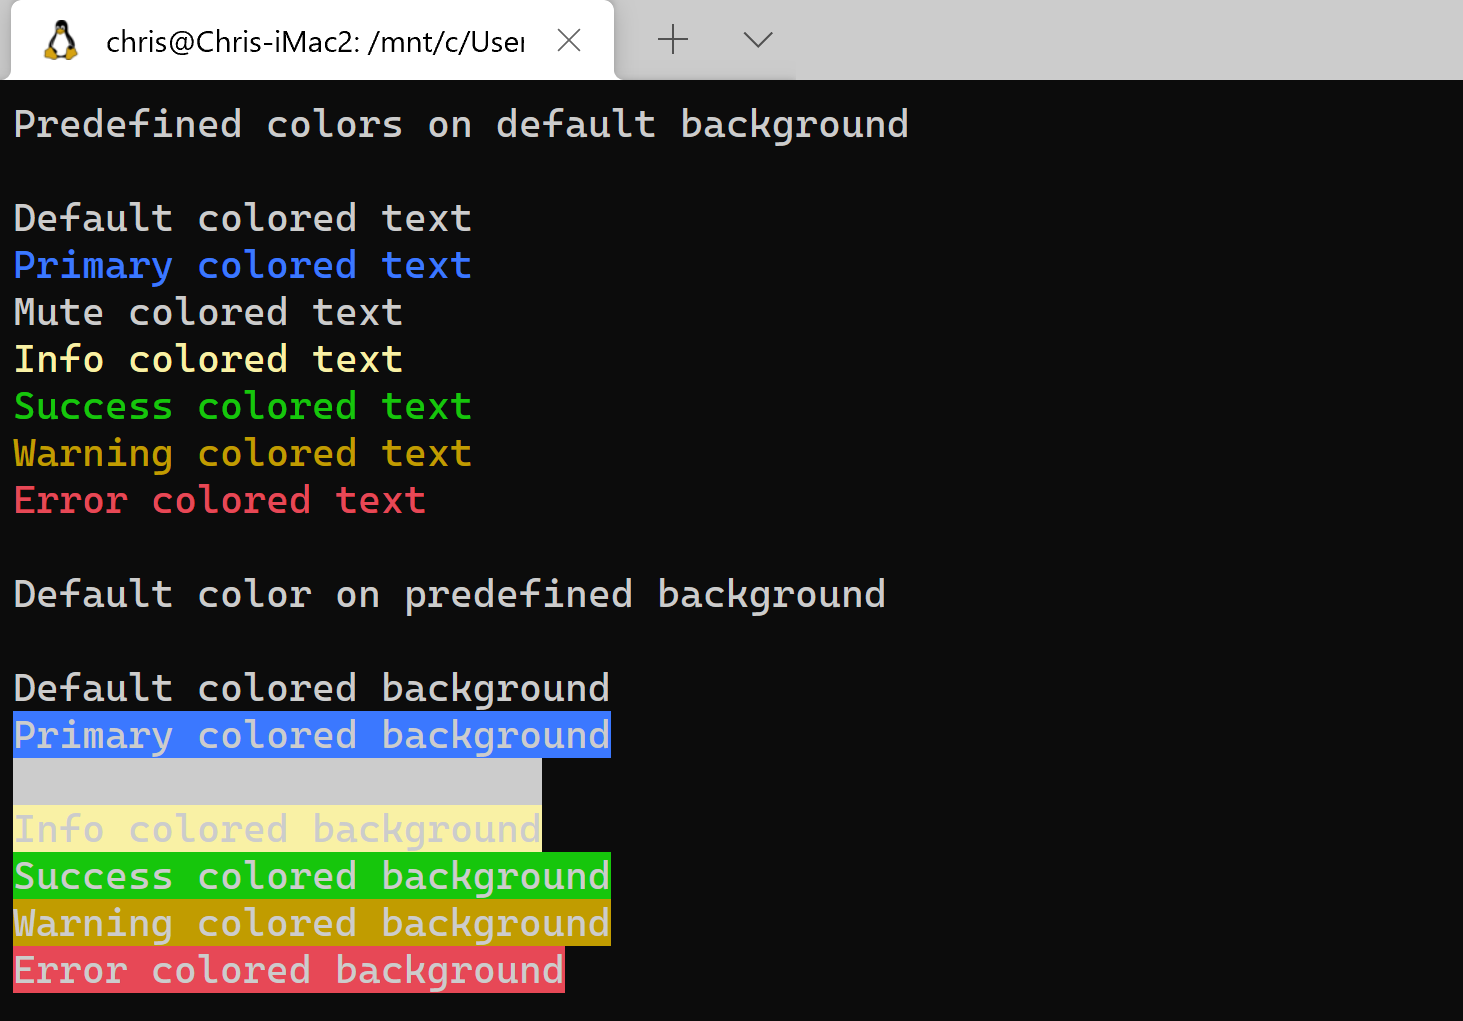 Nếu bạn là một người yêu thích Linux, hãy xem hình ảnh này để tìm hiểu thêm về cách thay đổi màu sắc văn bản trong Terminal Linux. Đây là một kỹ năng hữu ích mà bạn không nên bỏ lỡ!